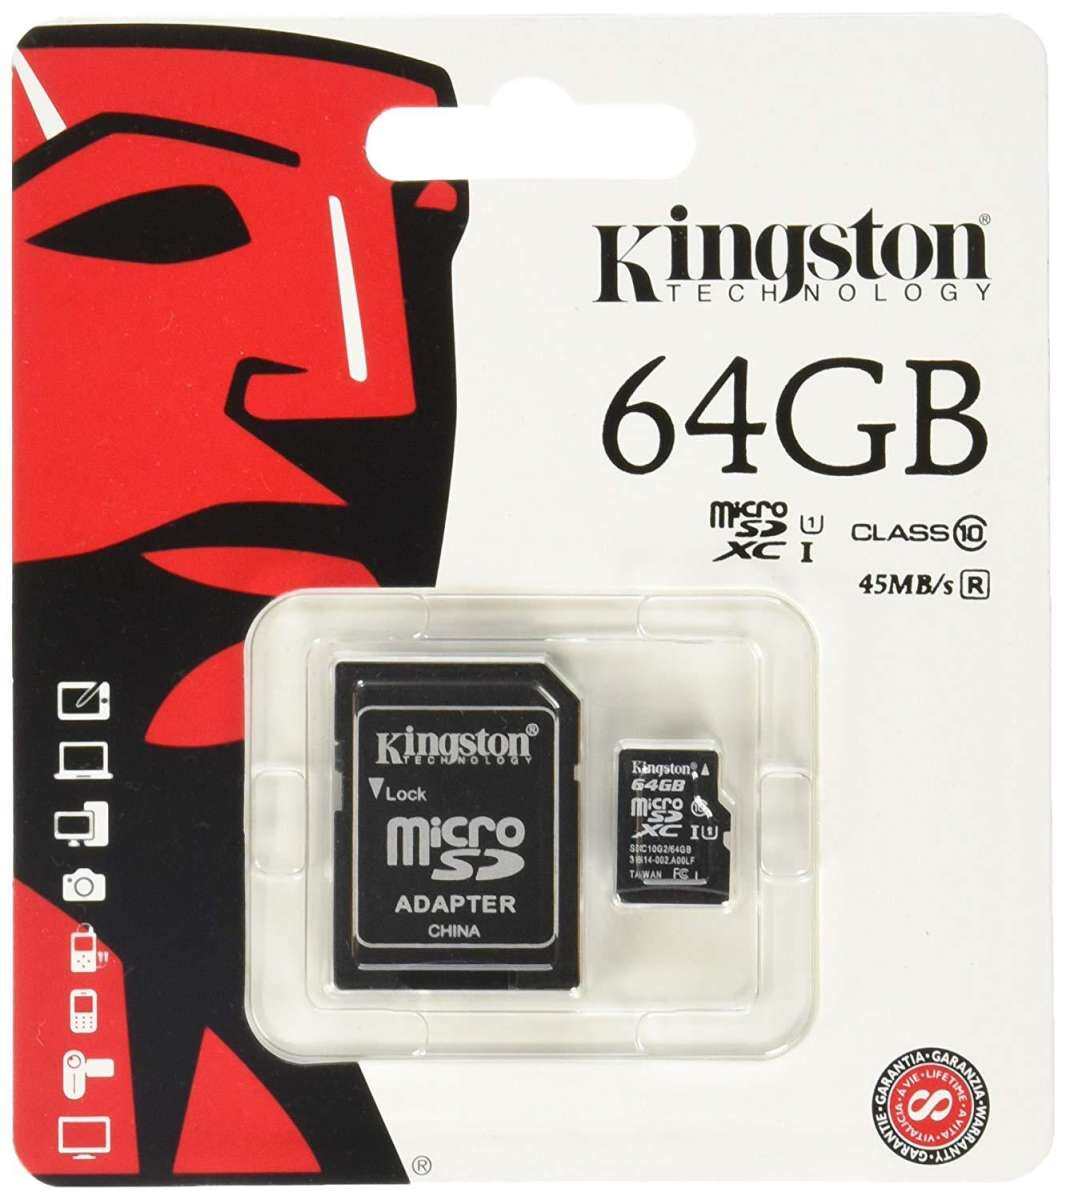 (ของแท้) Kingston เมมโมรี่การ์ด 64GB SDHC/SDXC Class 10 UHS-I Micro SD Card with Adapter